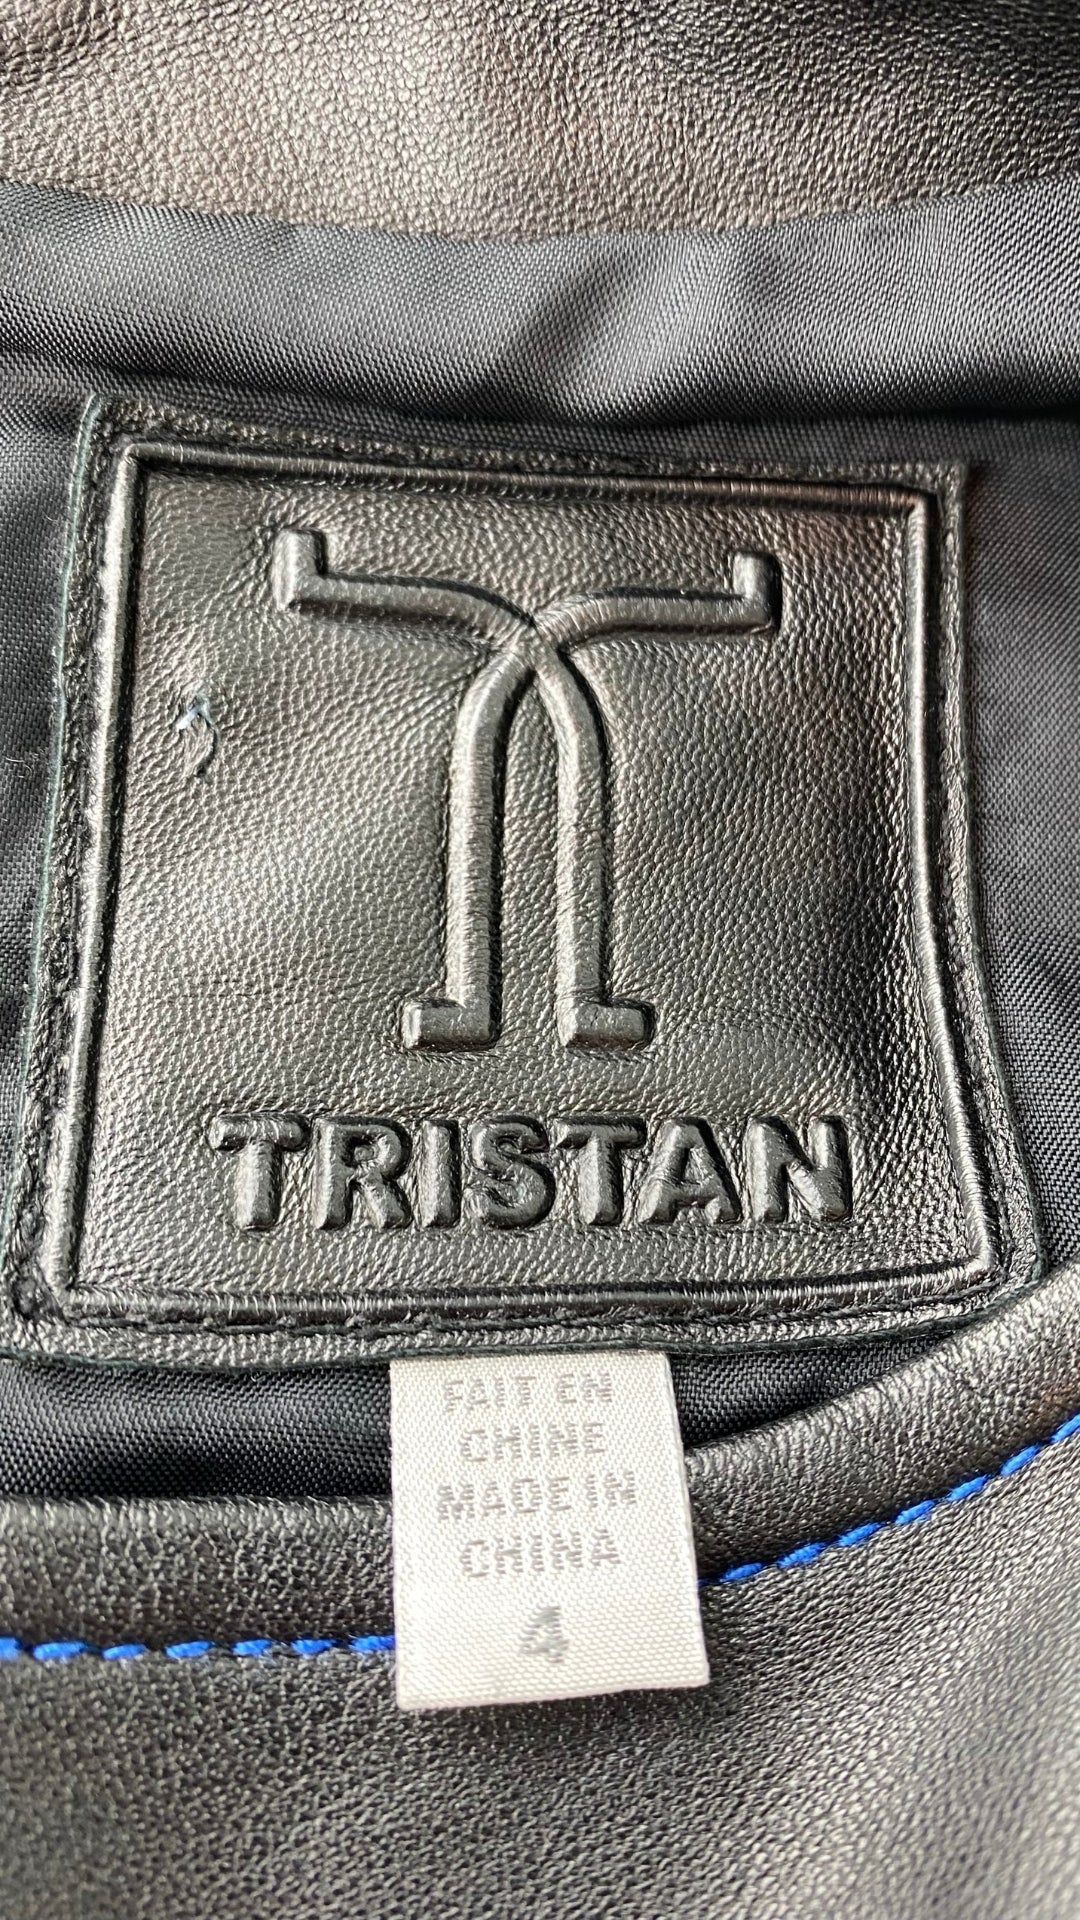 Robe ajustée en cuir à surpiqûres bleu royal Tristan taille 4. Vue de l'étiquette de marque et taille.